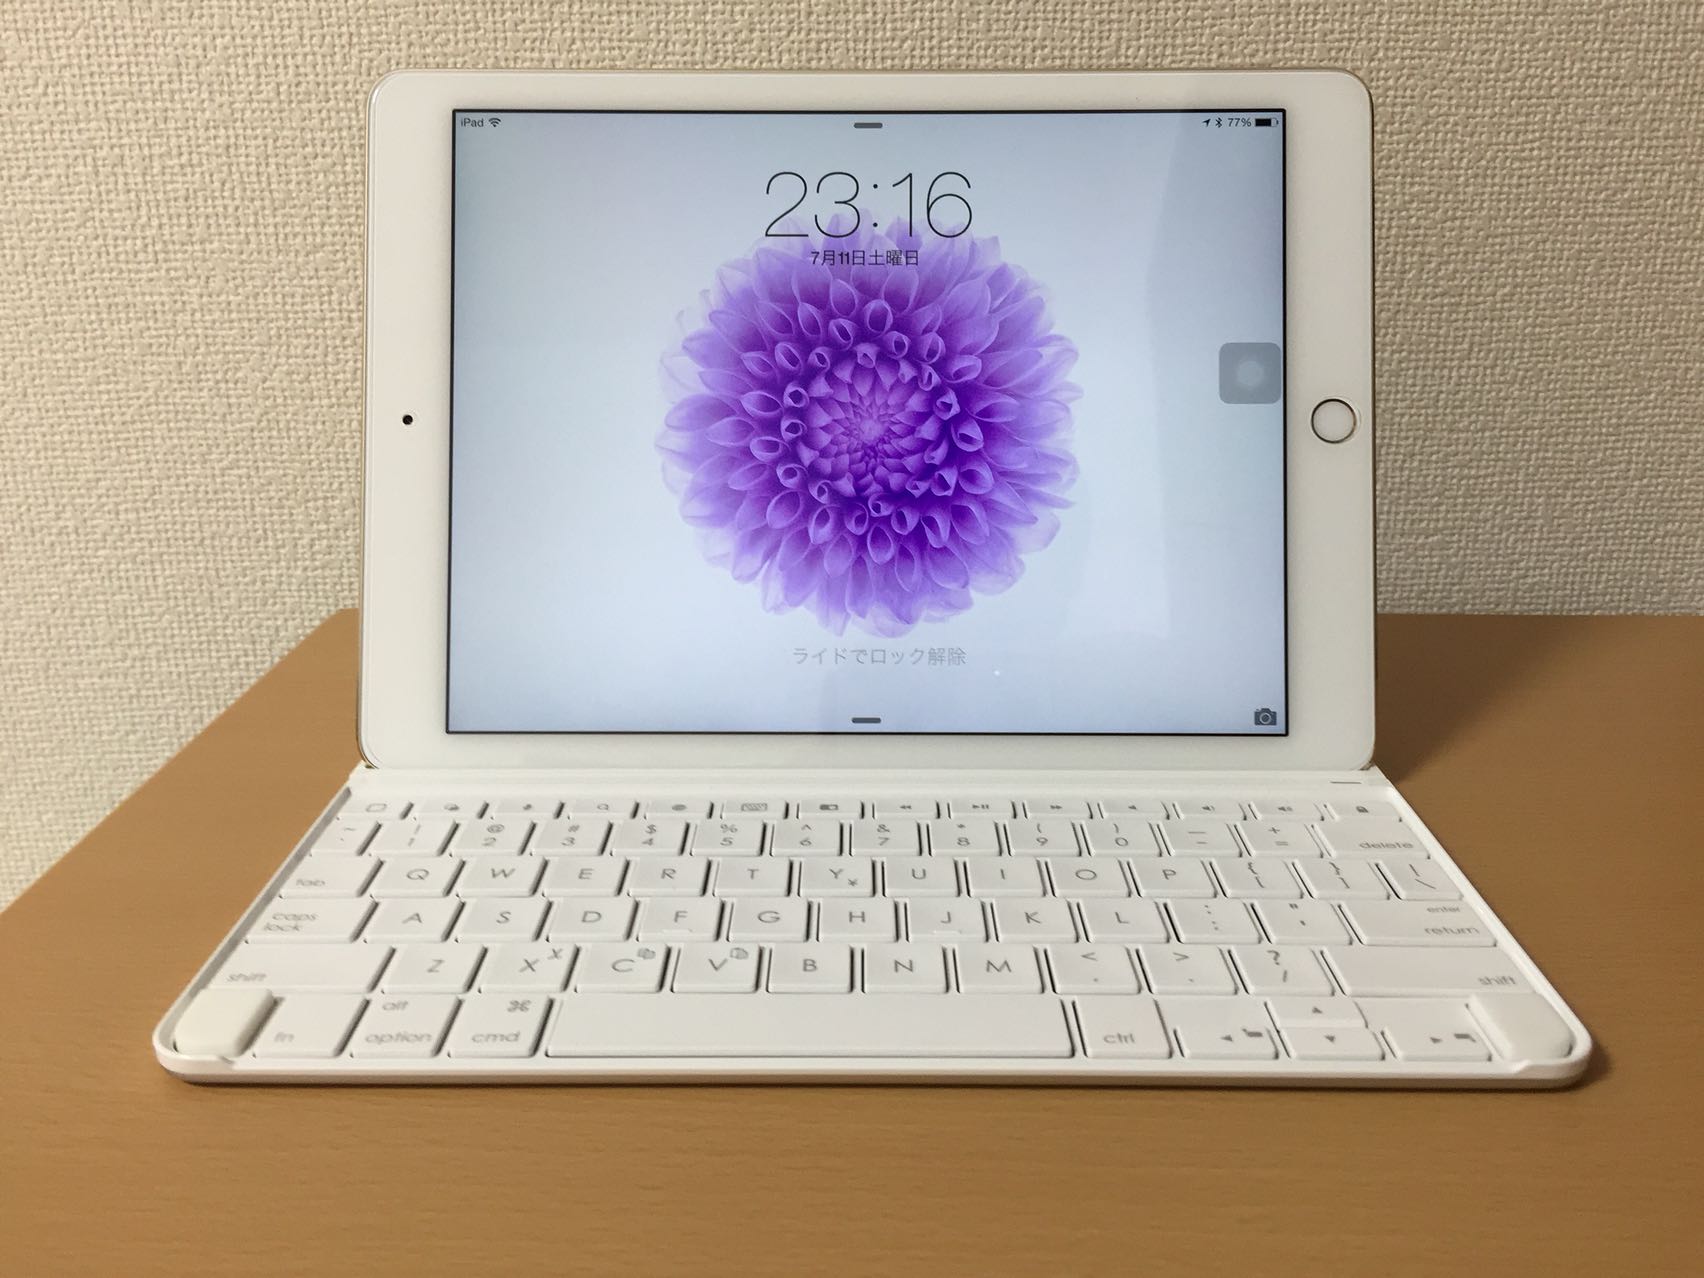 激安 iPad iPad6 iPad AIR Pro9.7 2 16GB ゴールド Amazon.co.jp: 保護